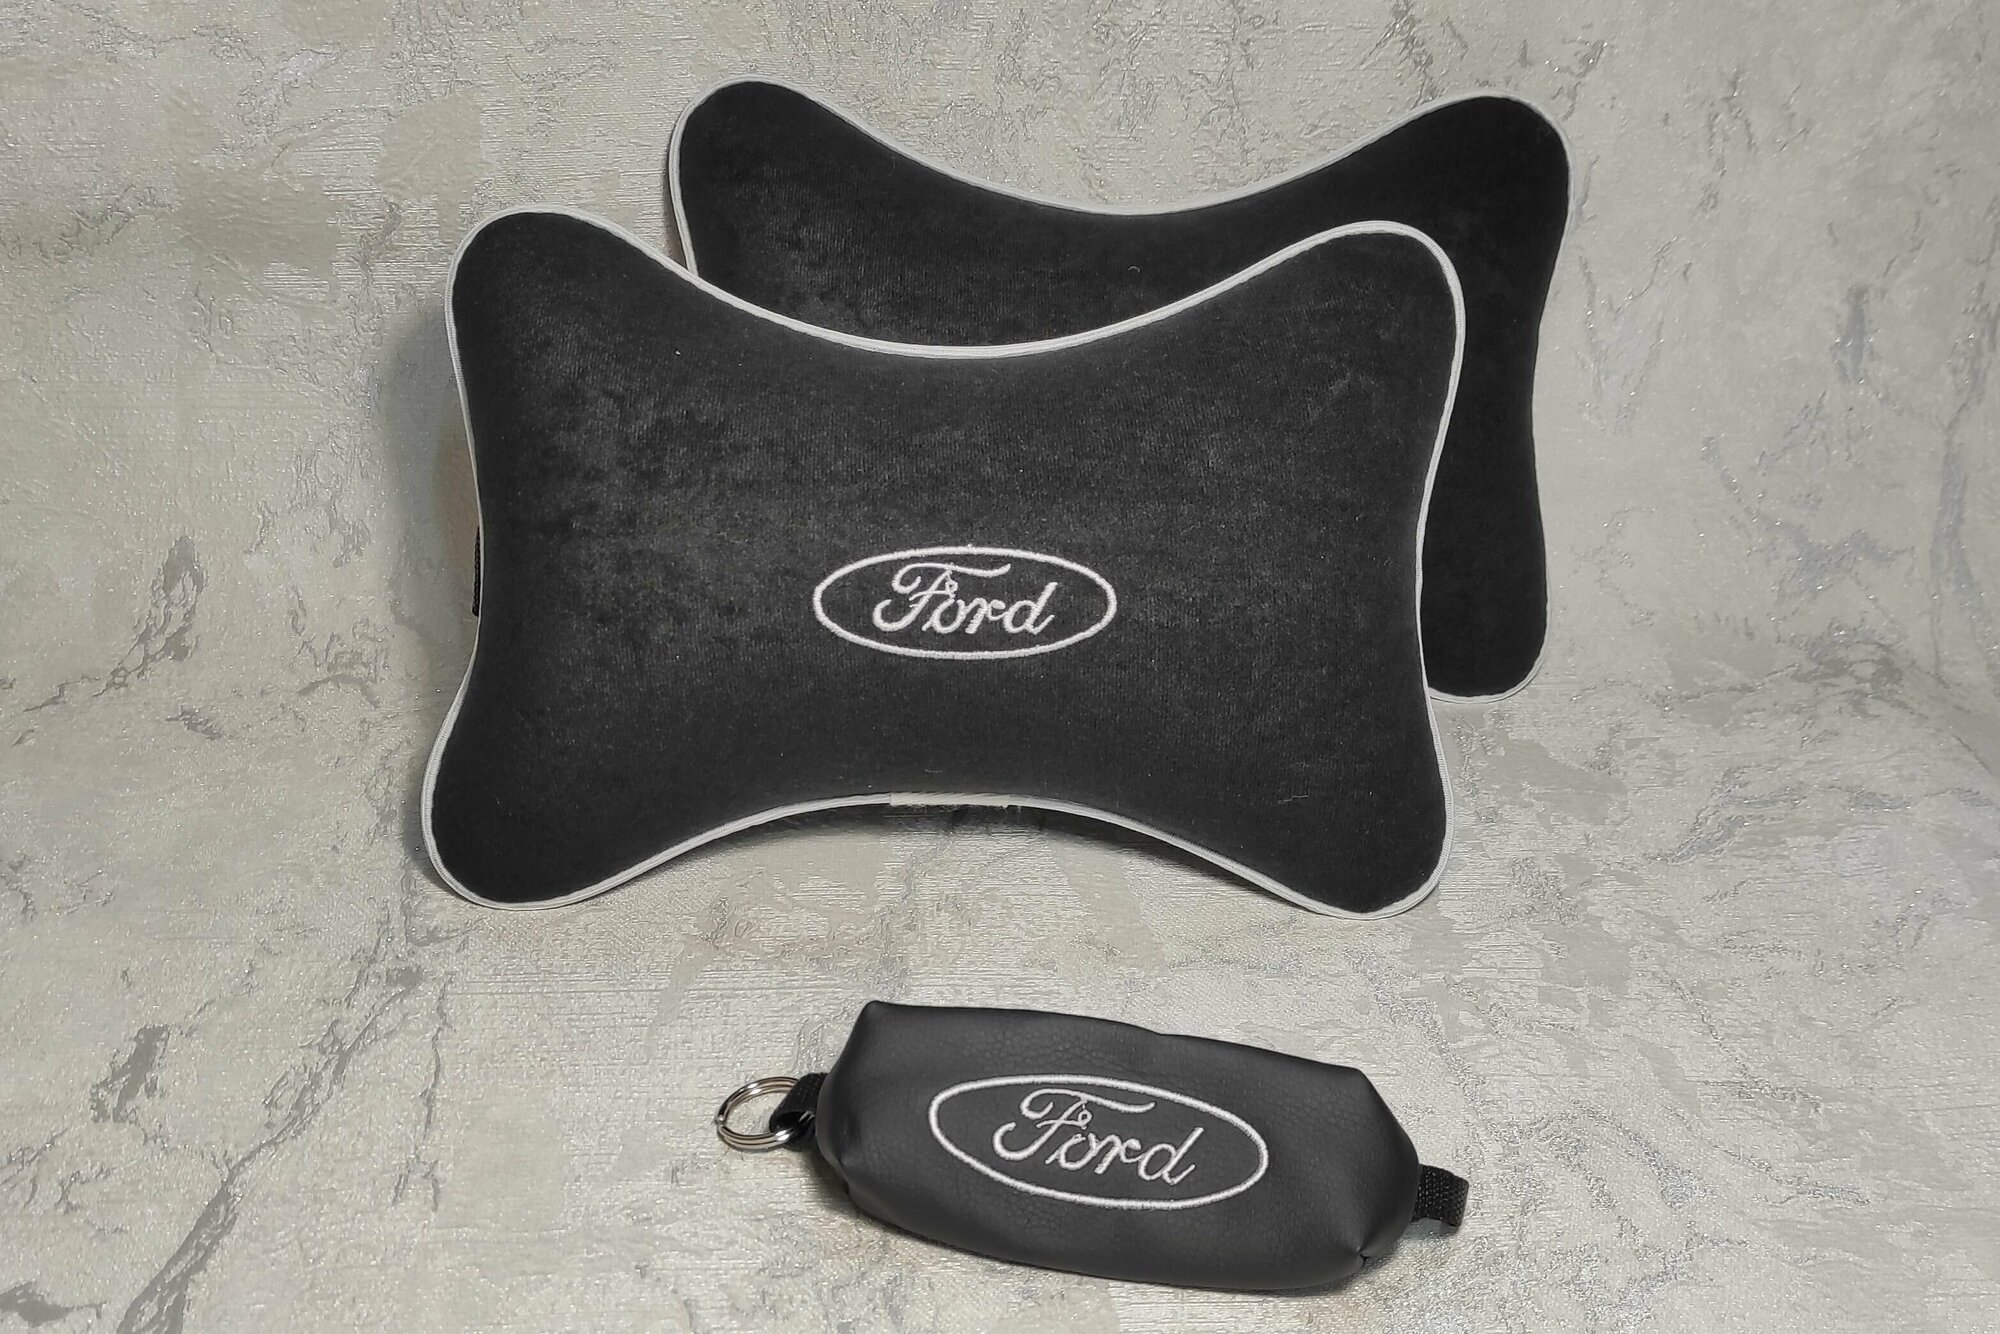 Подарочный набор: подушка на подголовник из велюра и ключница с логотипом FORD комплект 3 предмета